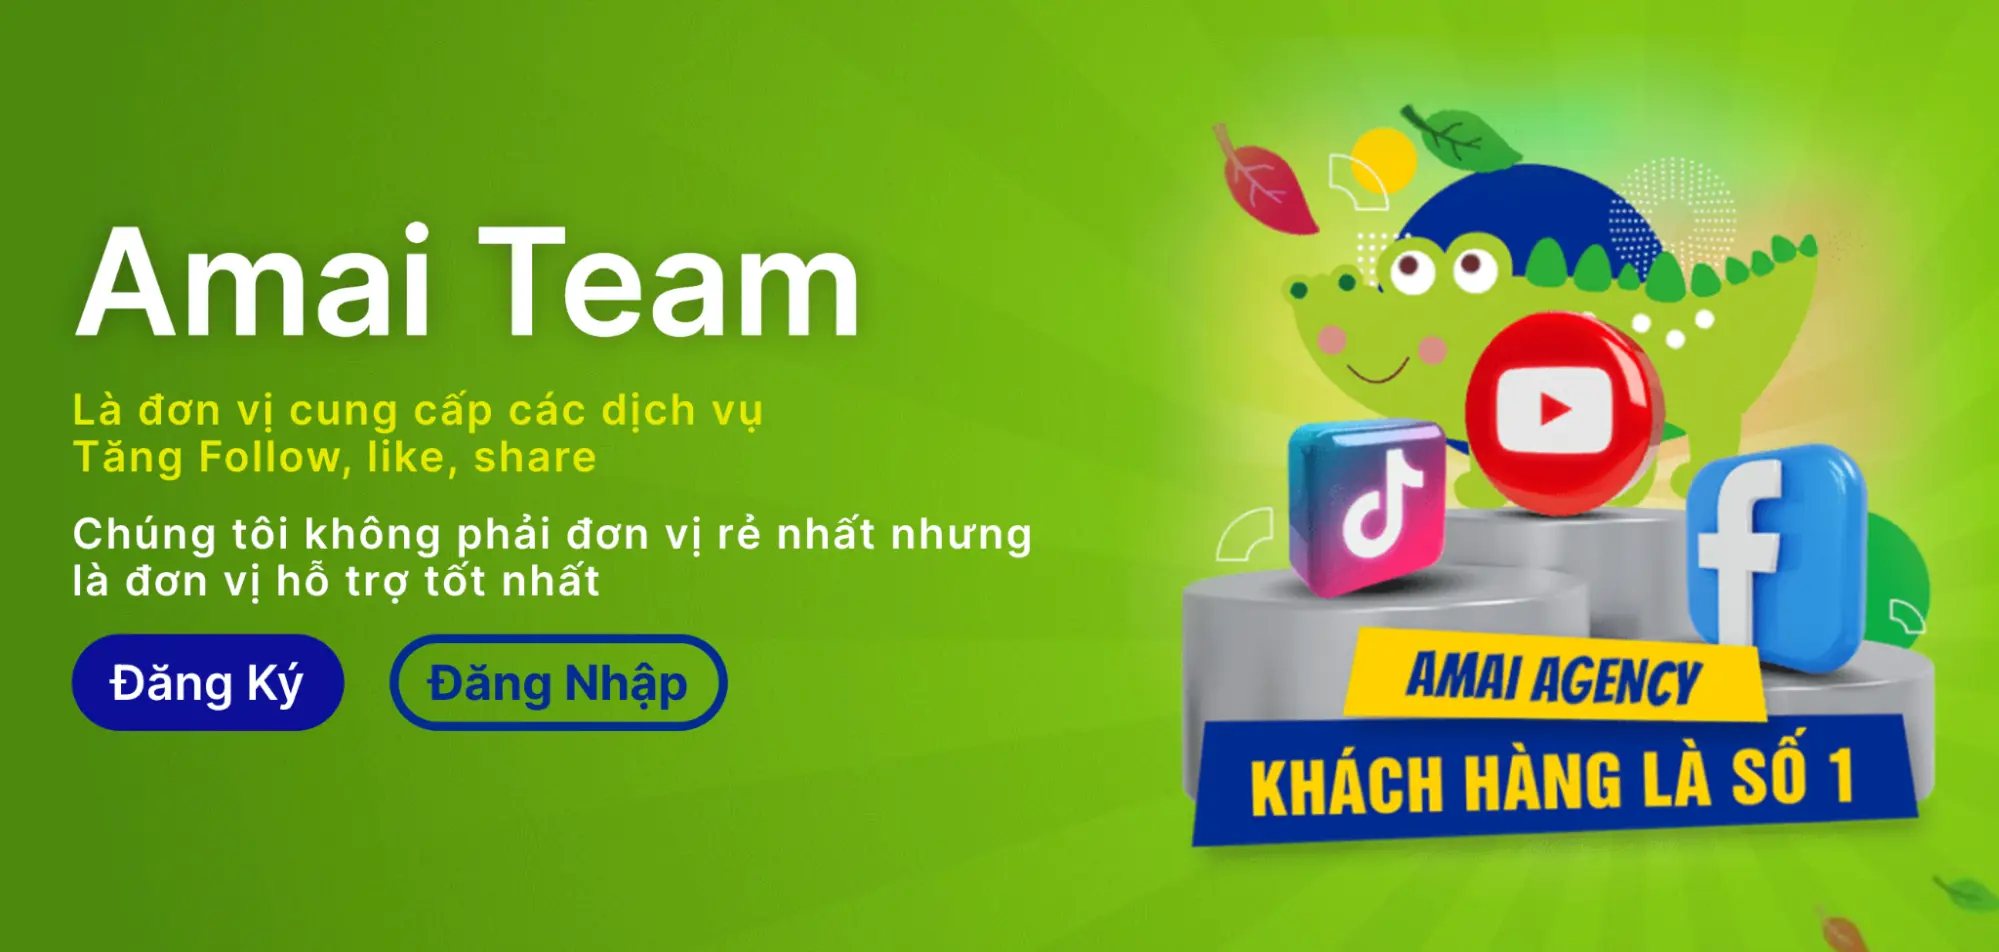 dịch vụ facebook Amai Team